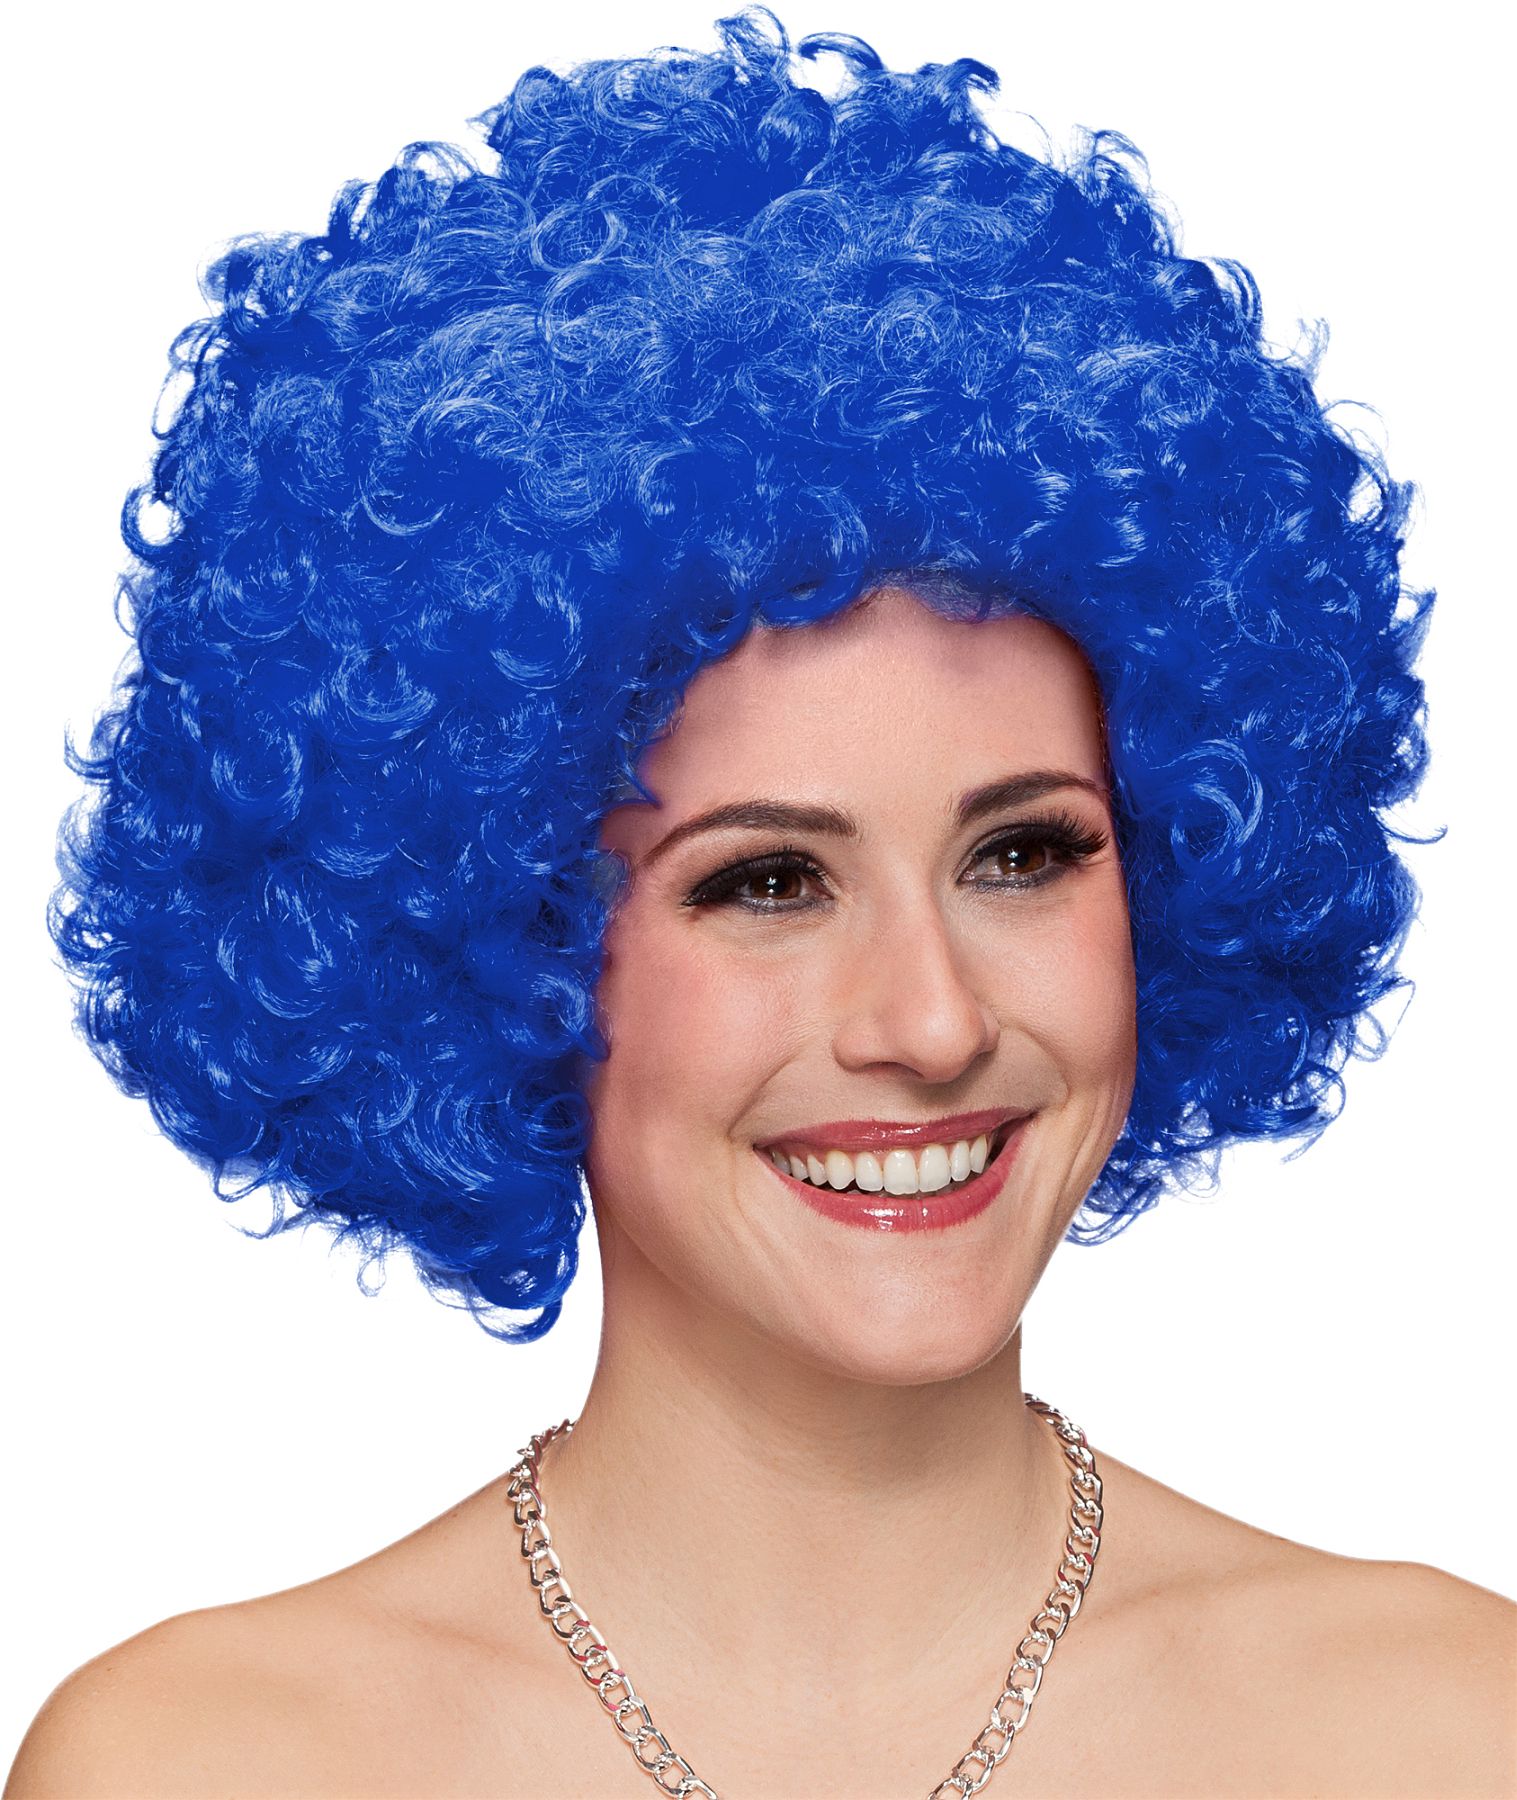 Hair, große Locke blau